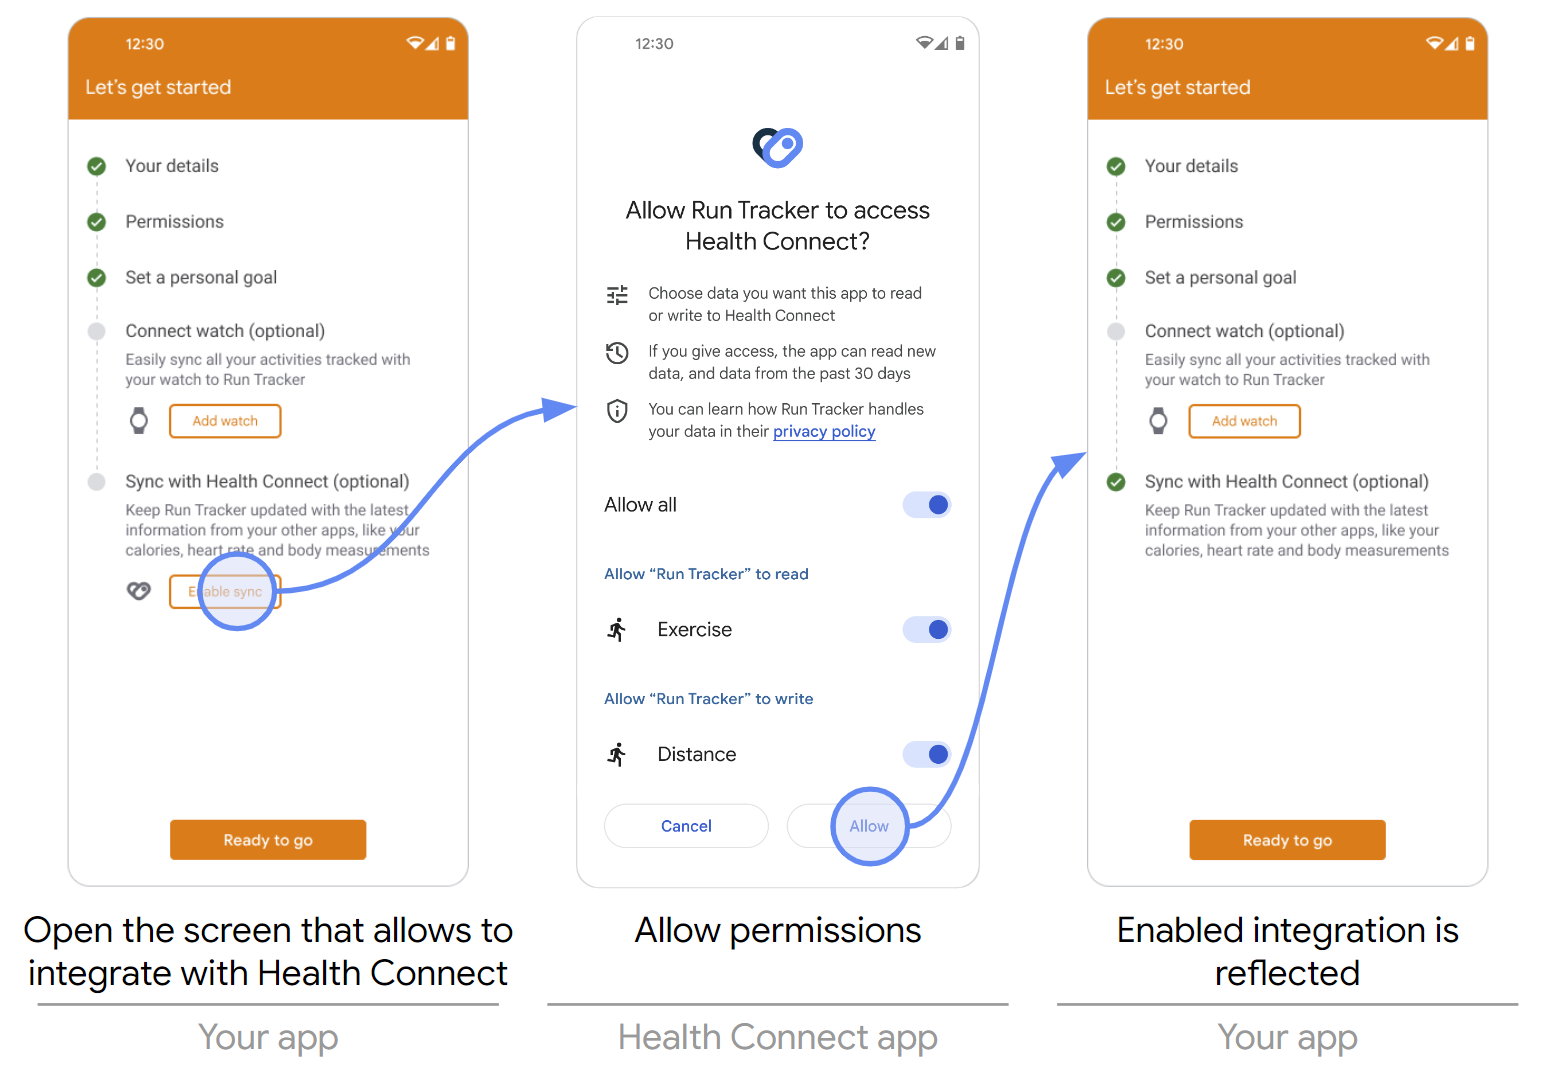 Versuchen, die Integration mit Health Connect durchzuführen, während die App deinstalliert ist